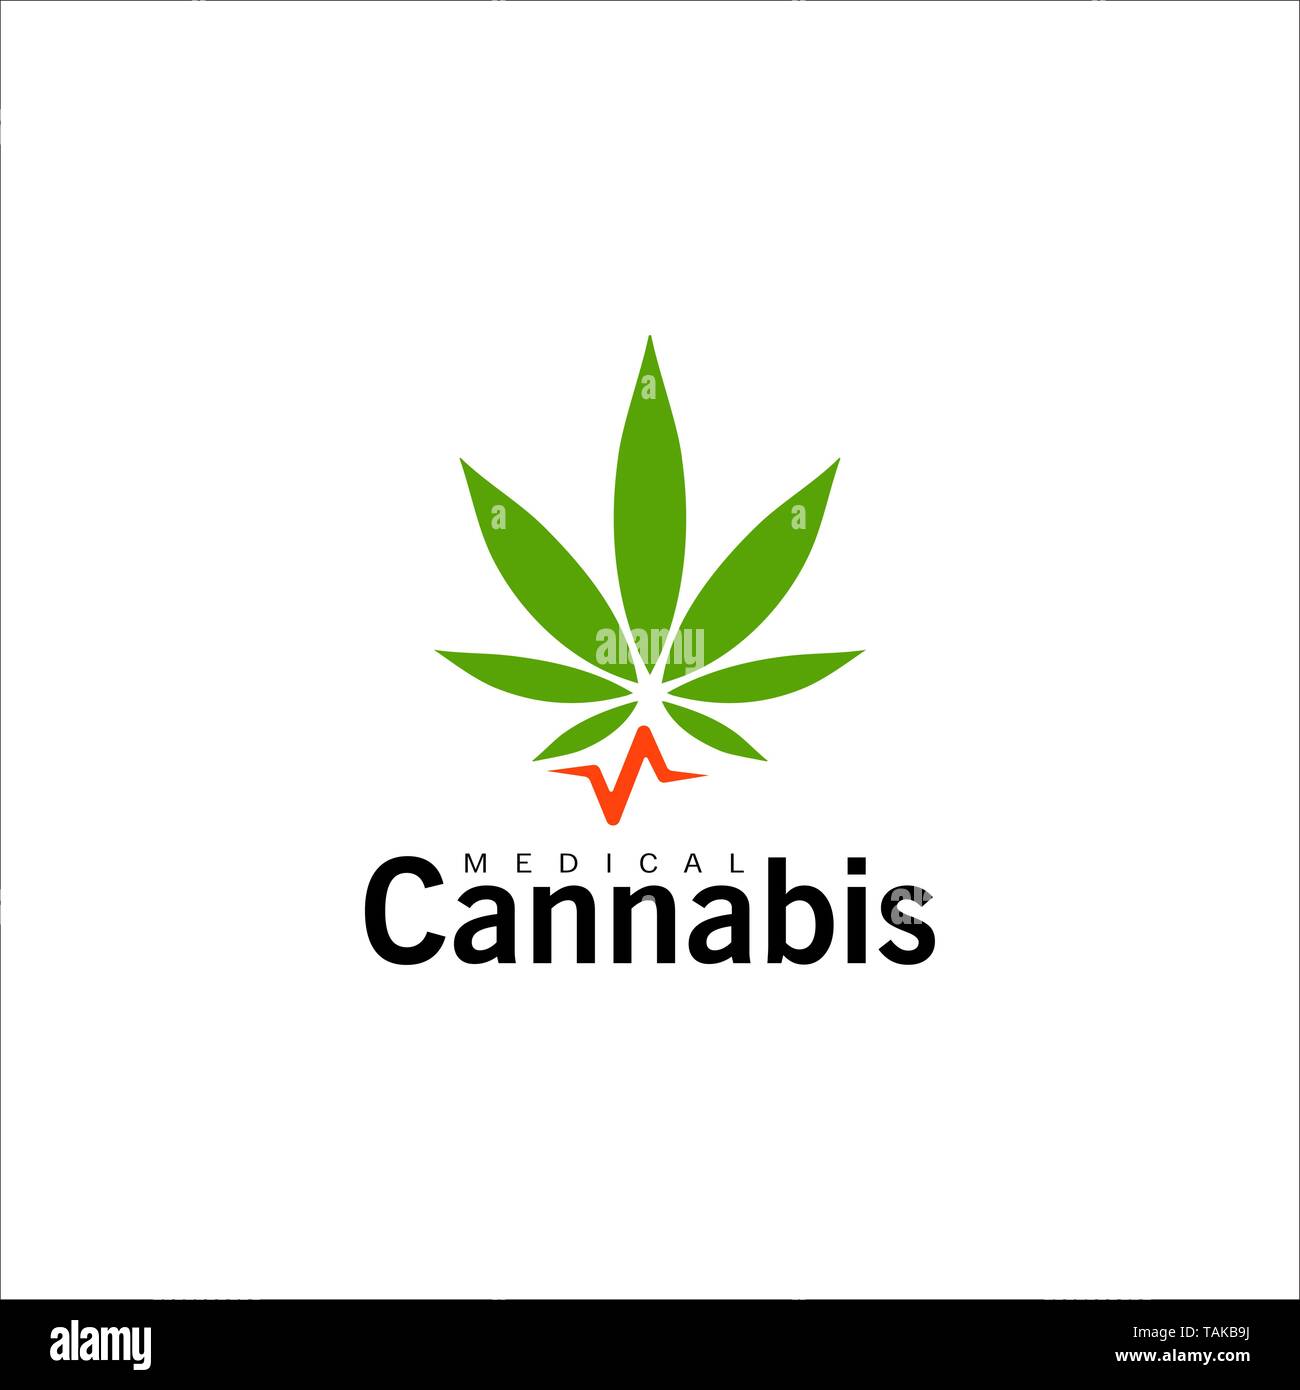 Das Symbol für die medizinische Verwendung von Cannabis. Grünes Hanfblatt, Marihuana Symbol. Isolierte einfache flache logo Vorlage. Konzept Design für die Medizin. Isolierte vektor Emblem. Stock Vektor